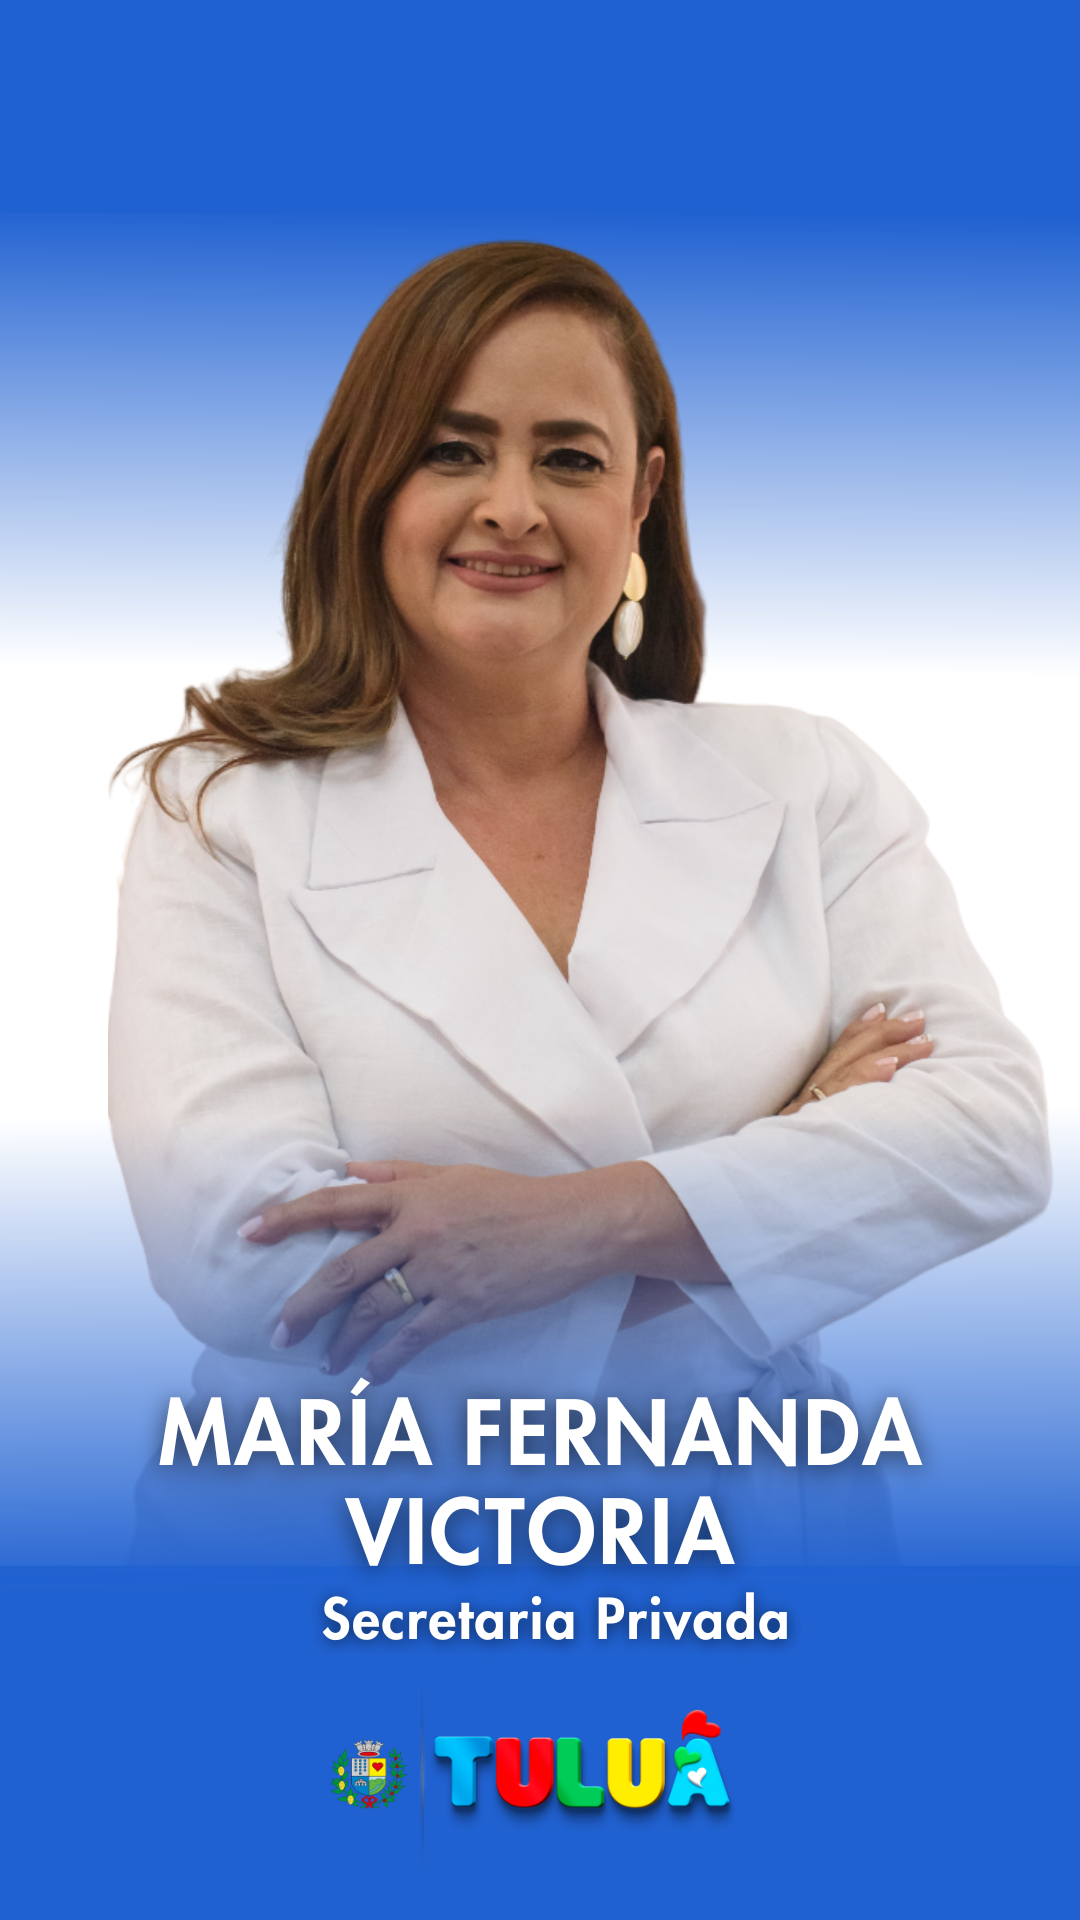 María Fernanda Victoria Arias